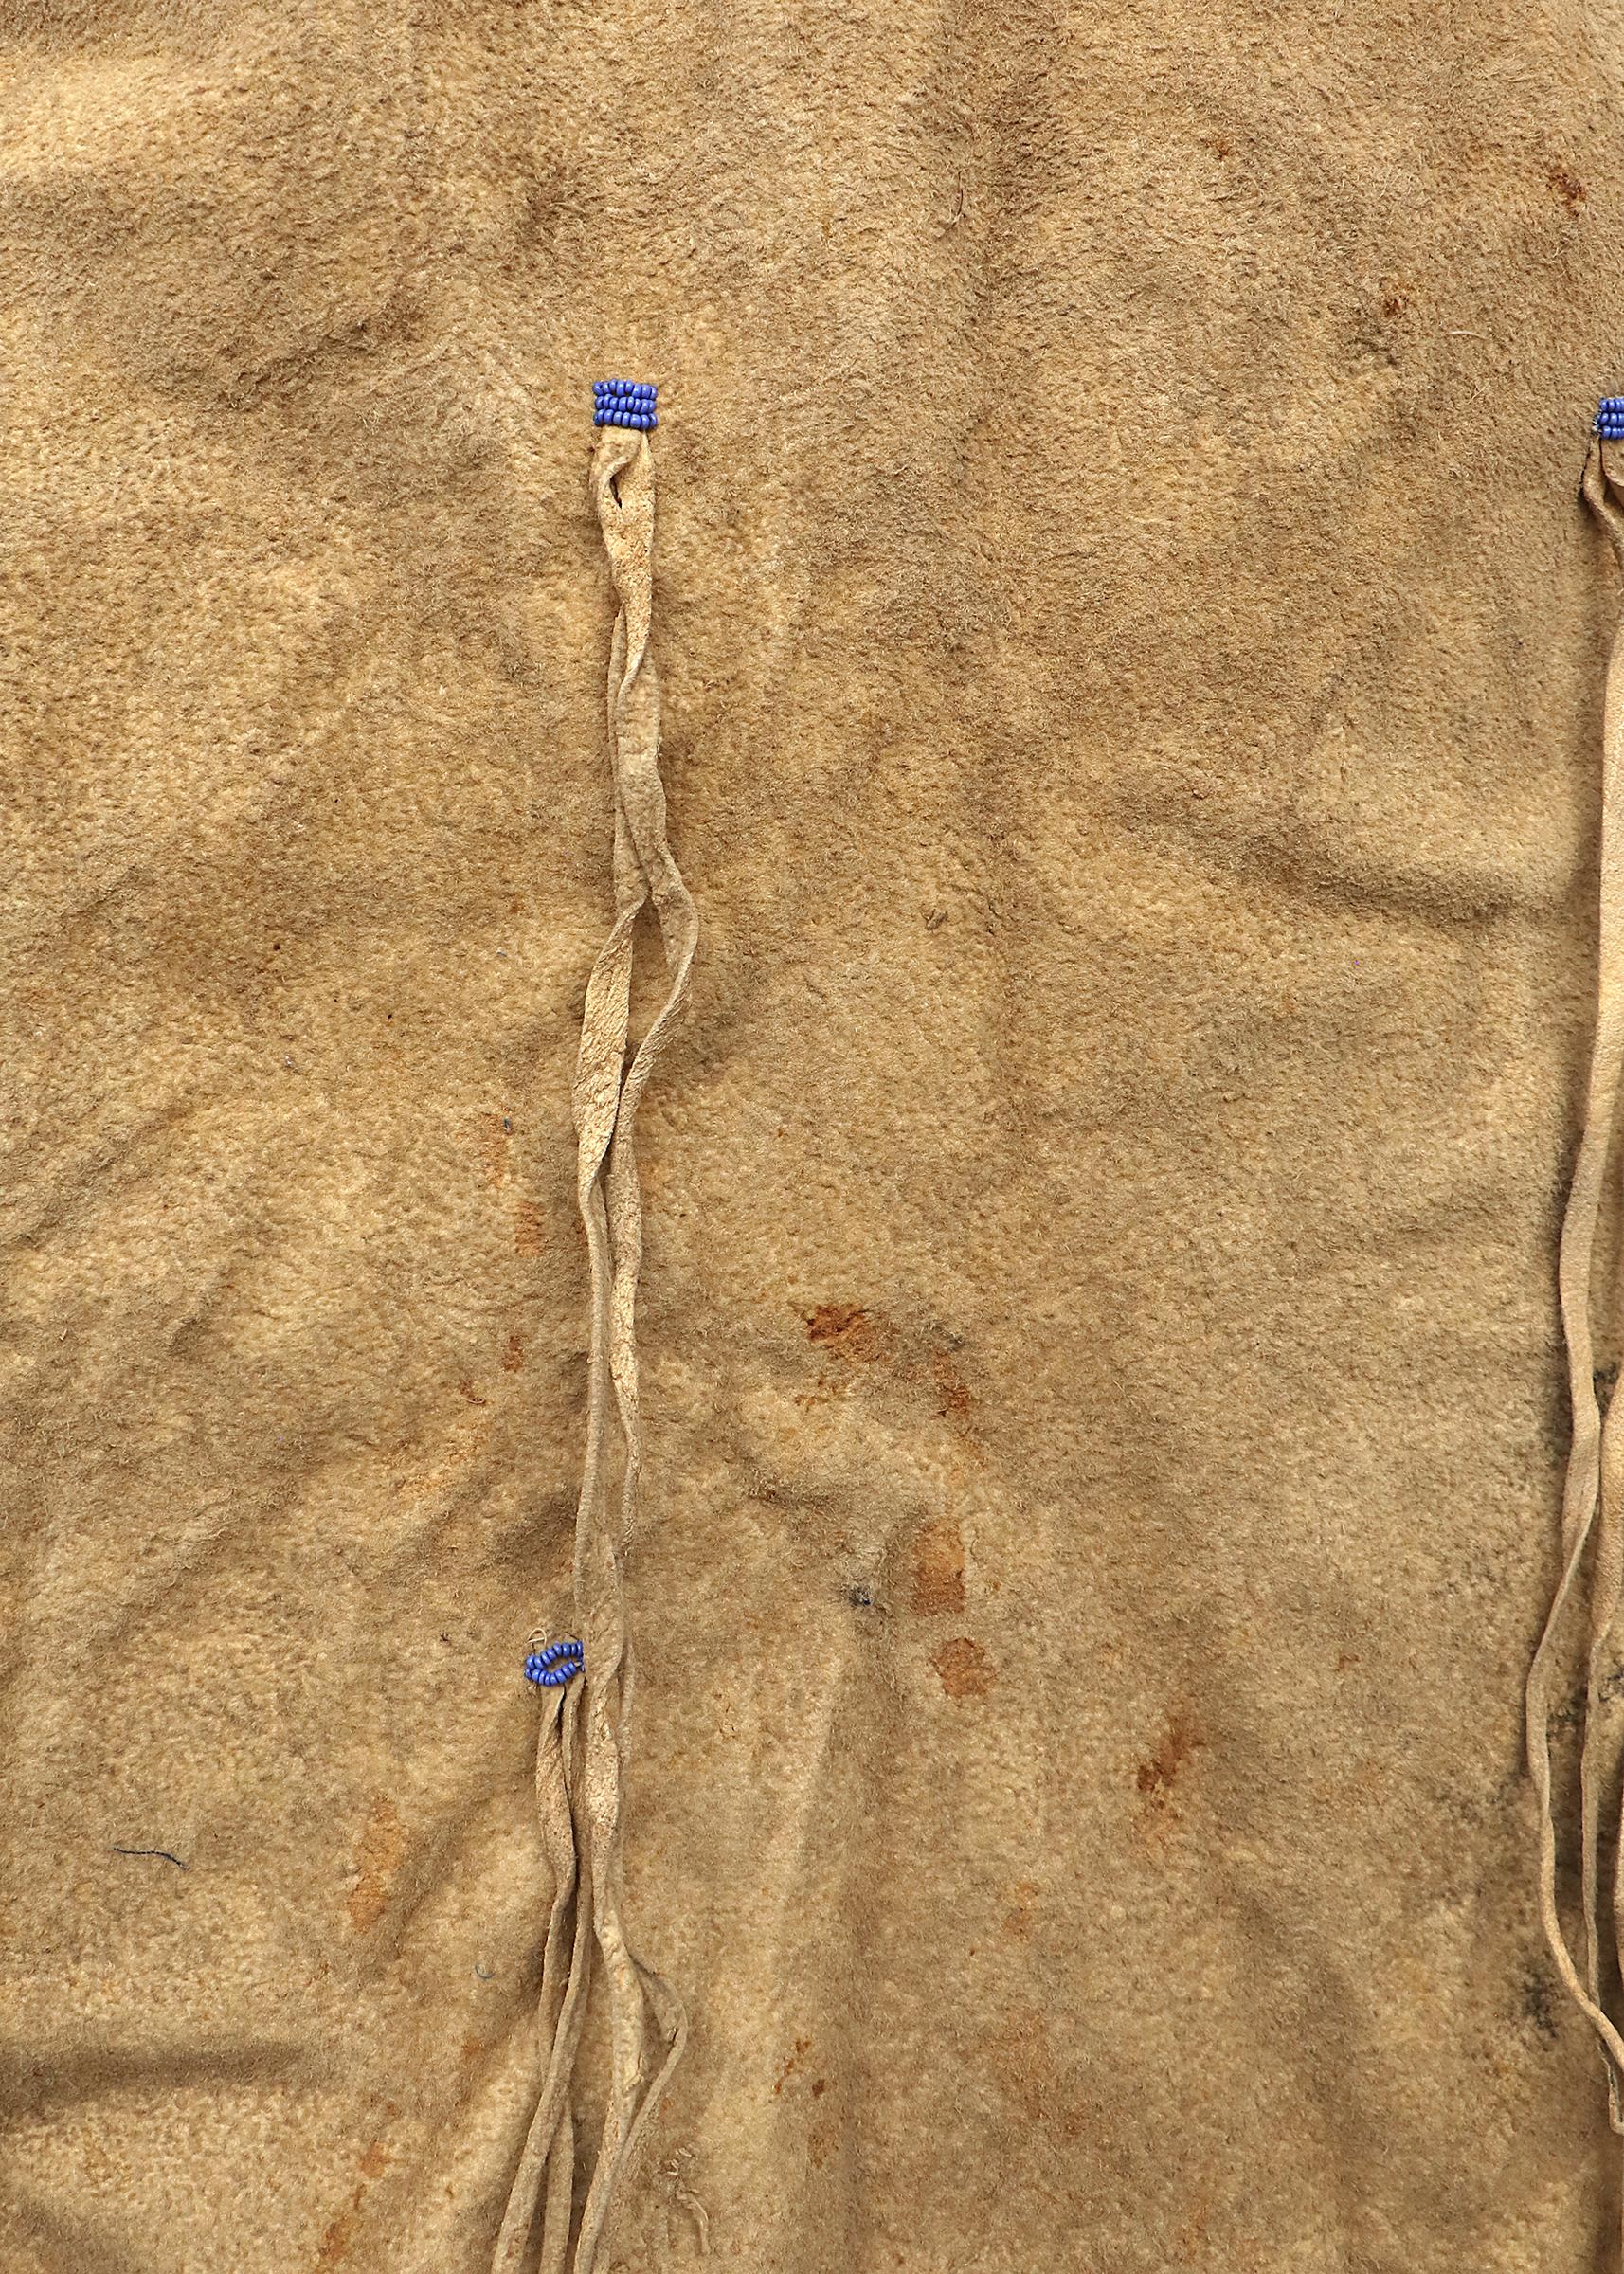 Robe d'enfant sioux avec jambières assorties. Créée à la main avec de la peau tannée indigène et perlée avec des perles de commerce en verre en bleu, blanc, rouge, rose et vert. Les éléments picturaux comprennent des motifs de croix et de Tipi